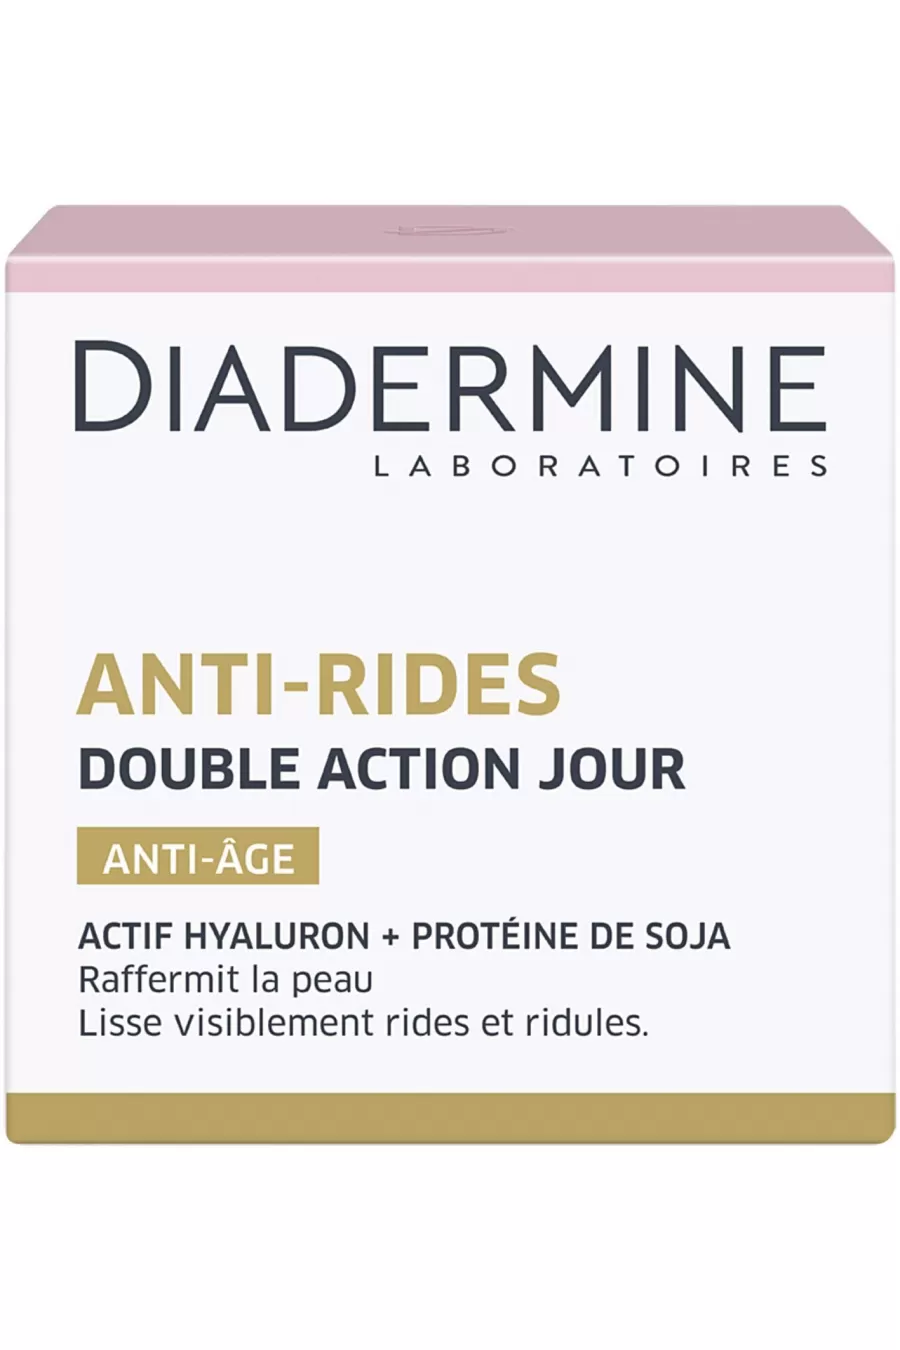 حاوی عصاره سویا آبرسانی و مرطوب کننده ANTI RIDES DOUBLE ACTION دیادرمین Diadermine کرم روز ضد چروک دابل اکشن